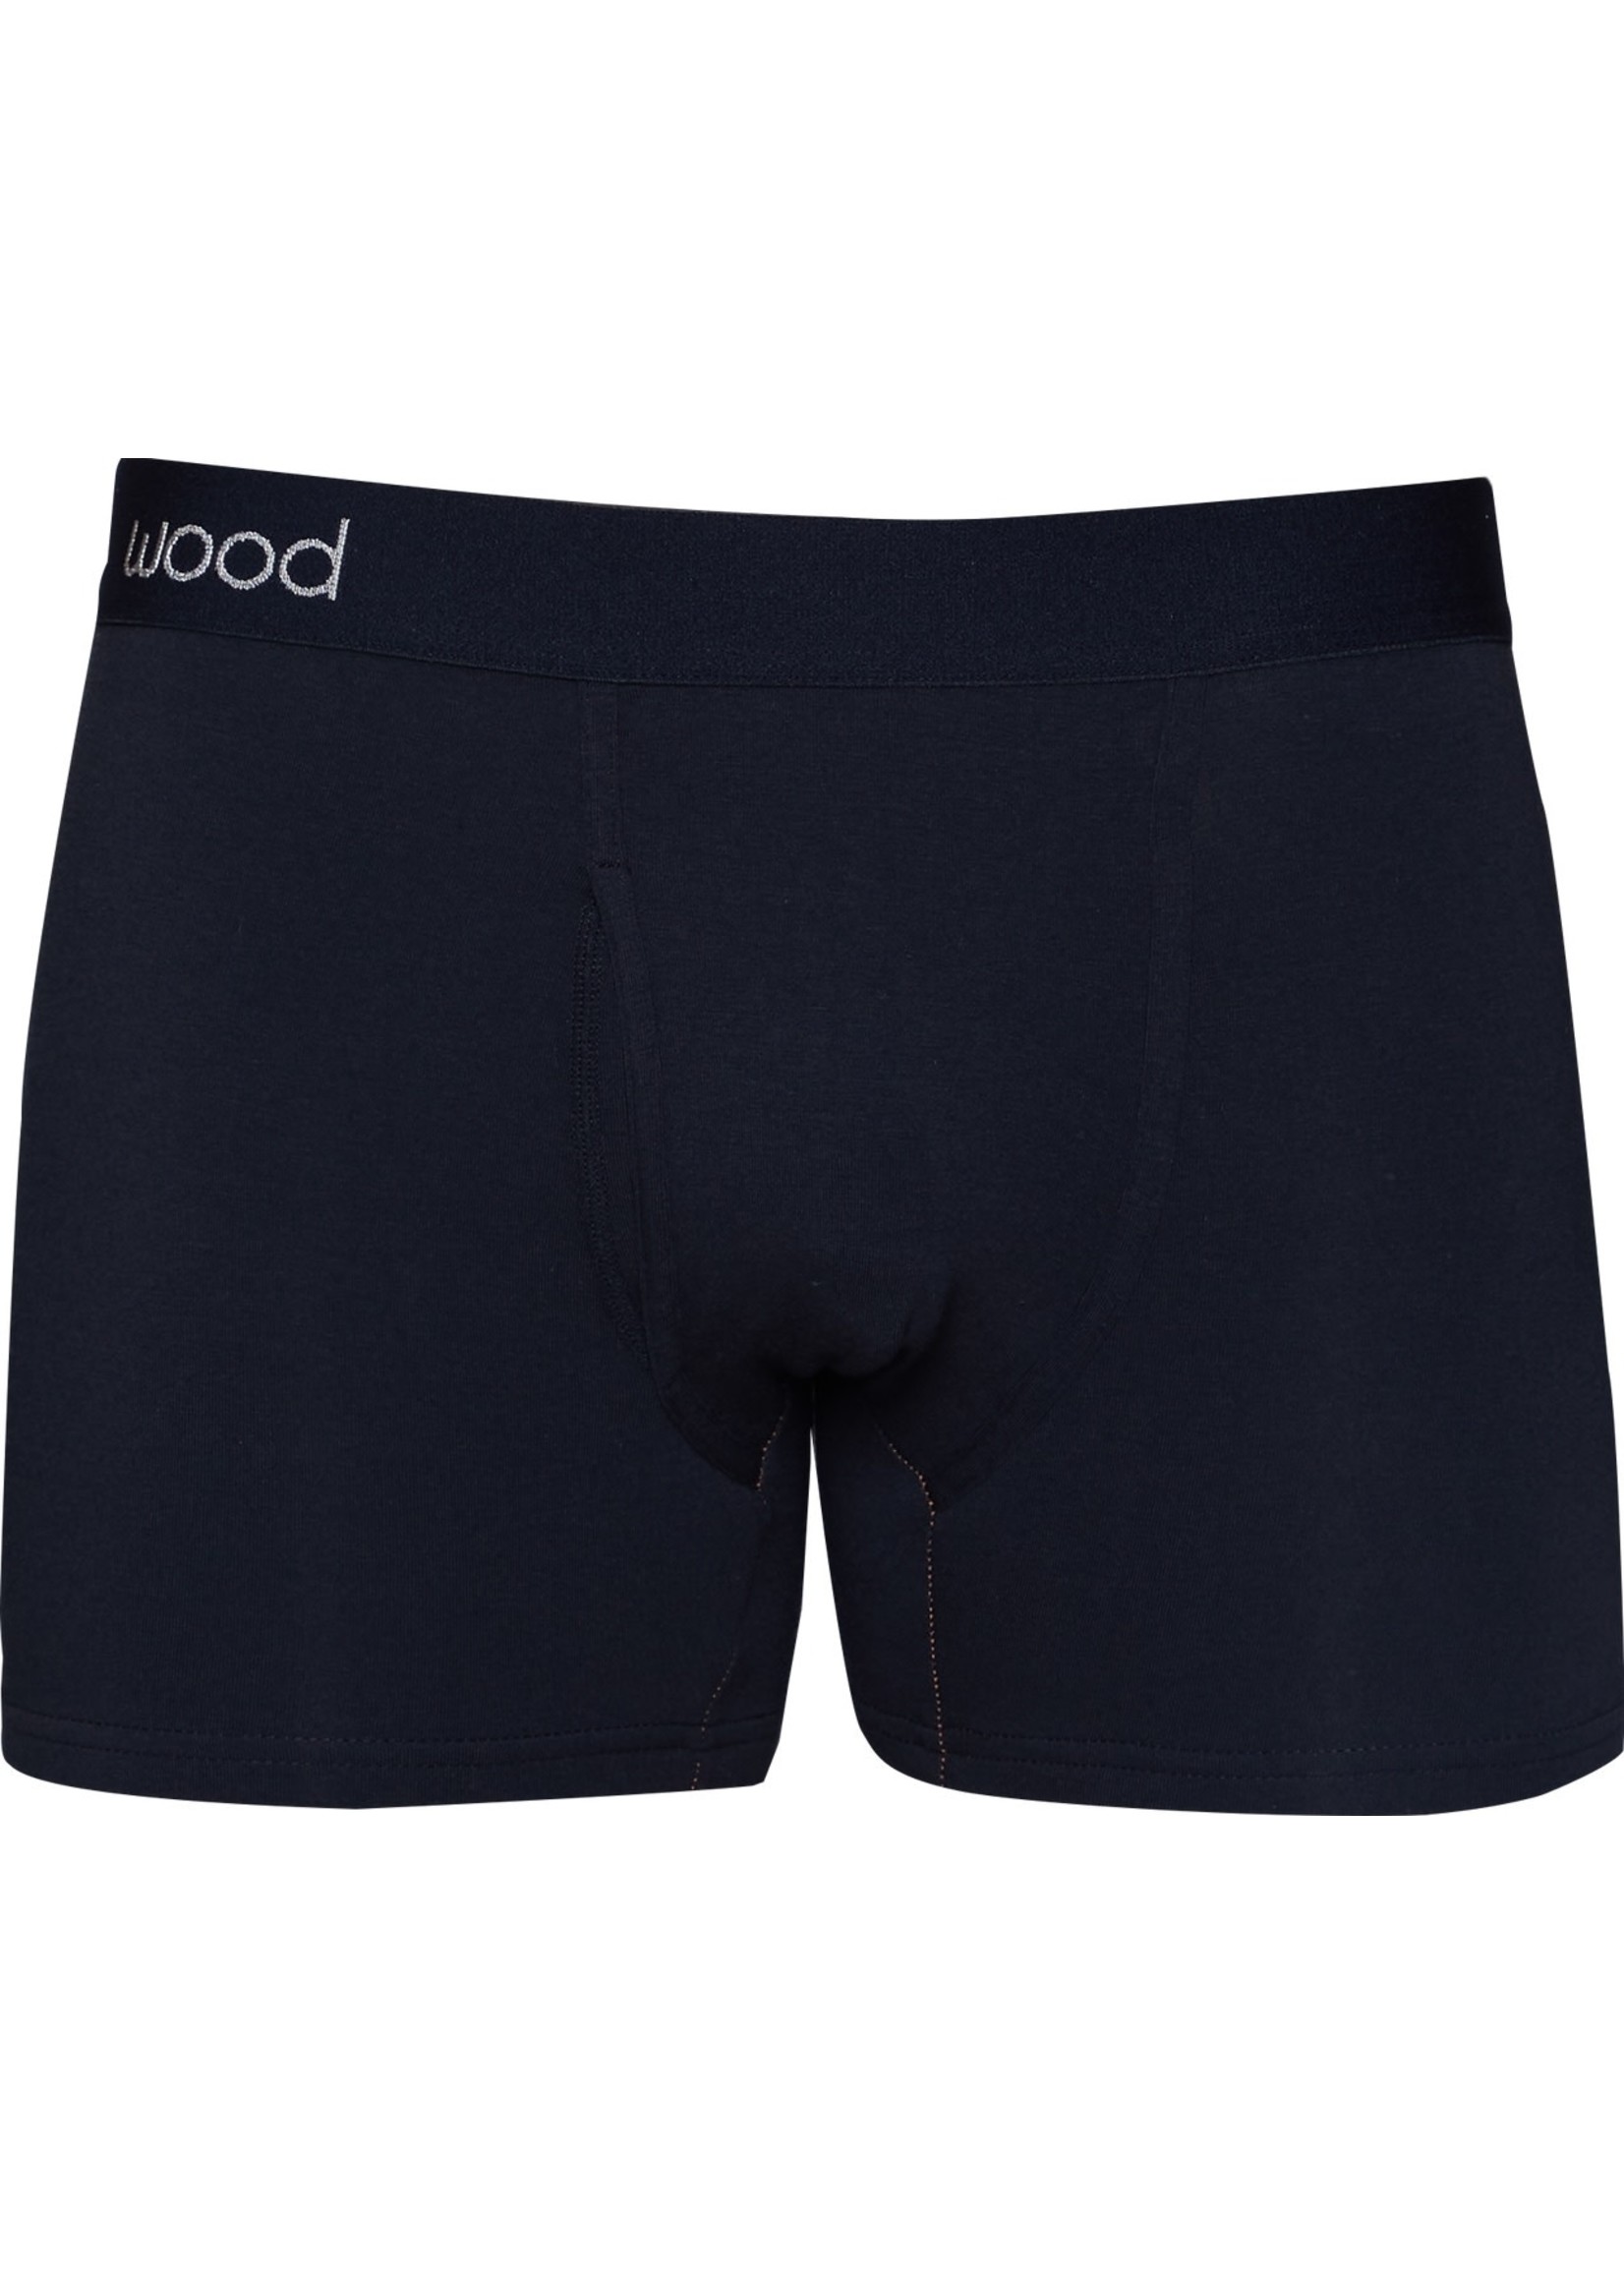 Wood Underwear Boxer Brief w/Fly in Black